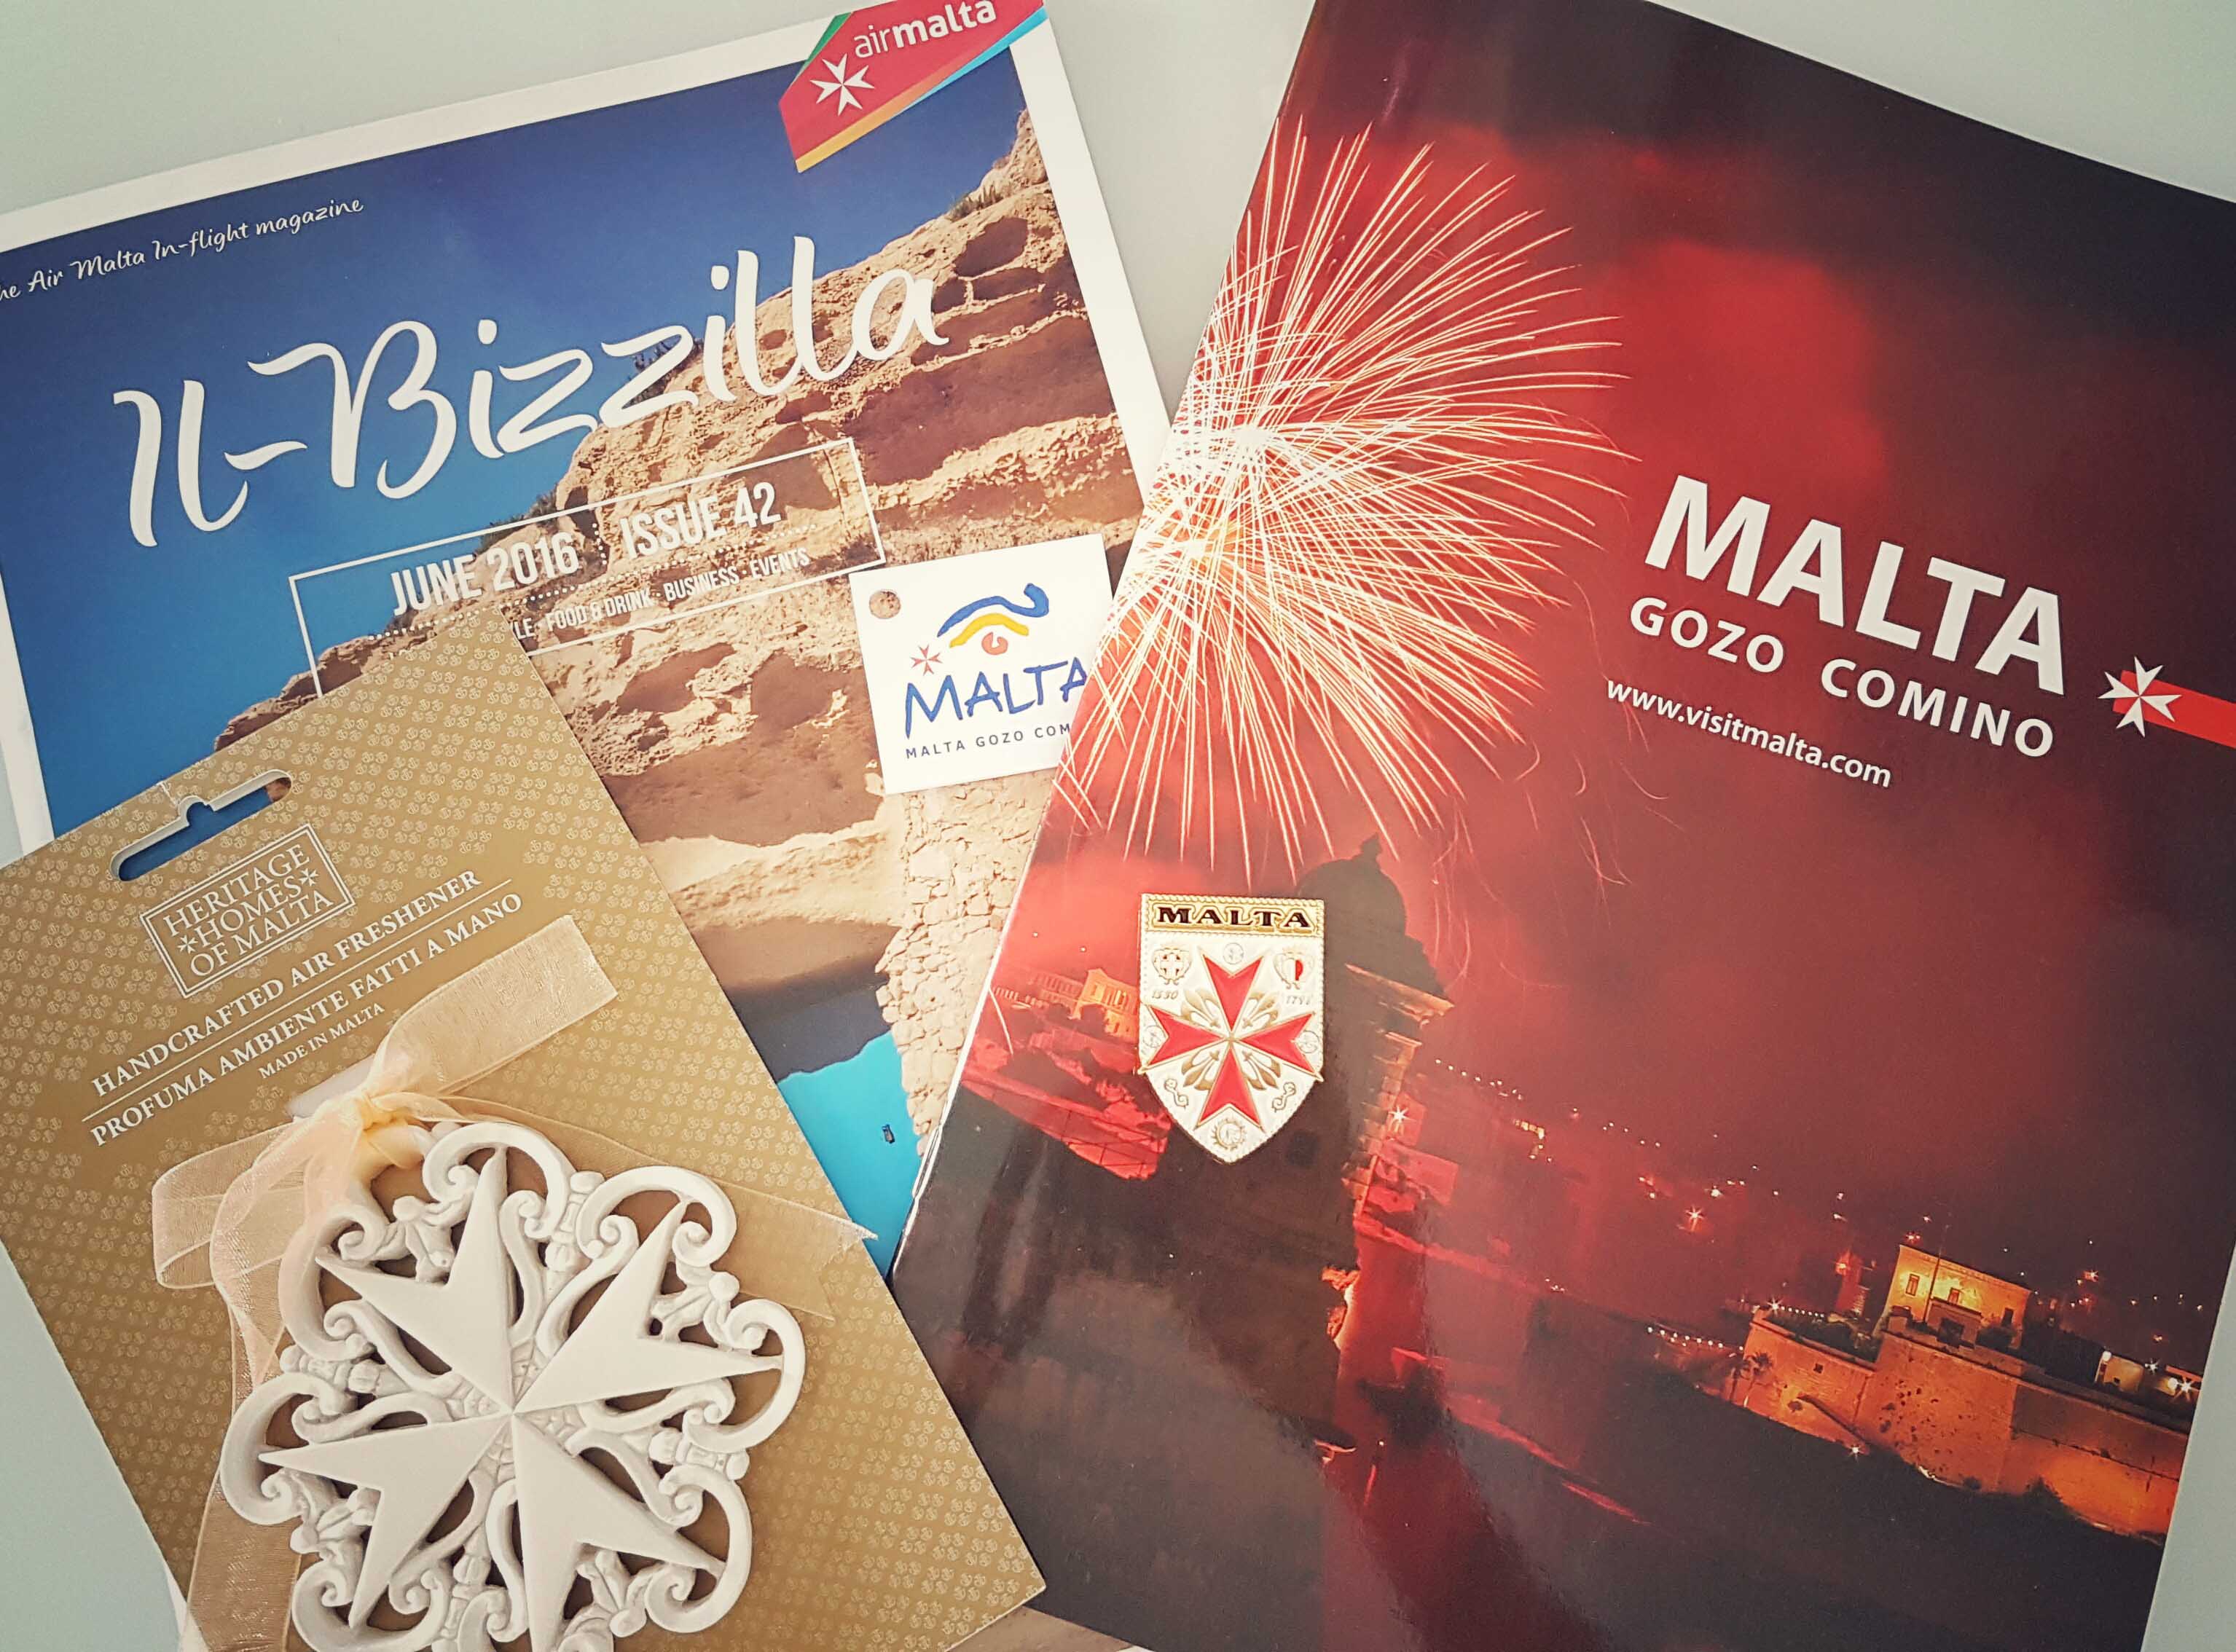 Ímãs, enfeitinhos, chaveiros, revistas... Cruz de Malta para todos os lados!